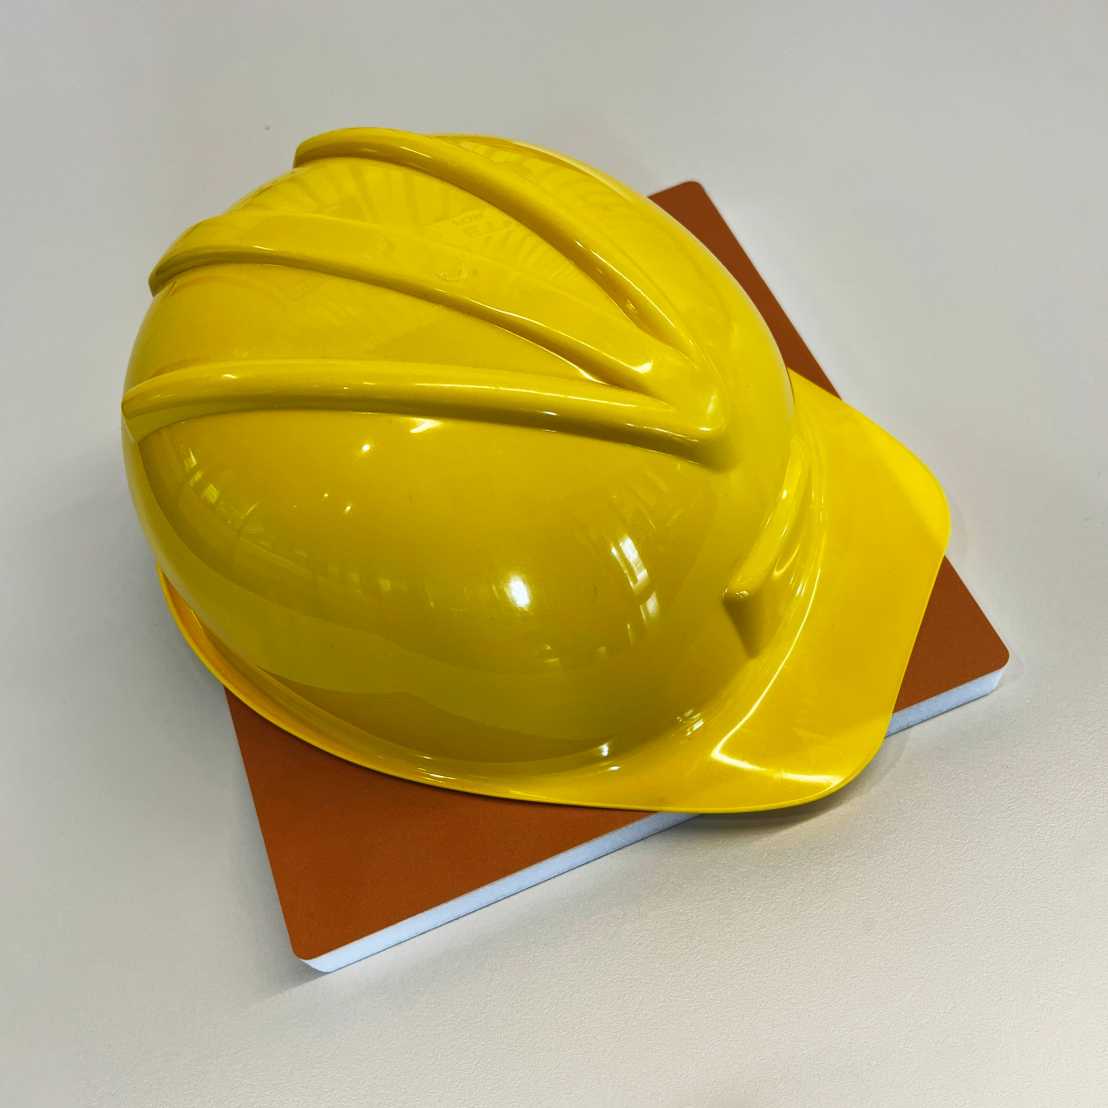 Gelber Schutzhelm, der auf Baustellen getragen wird